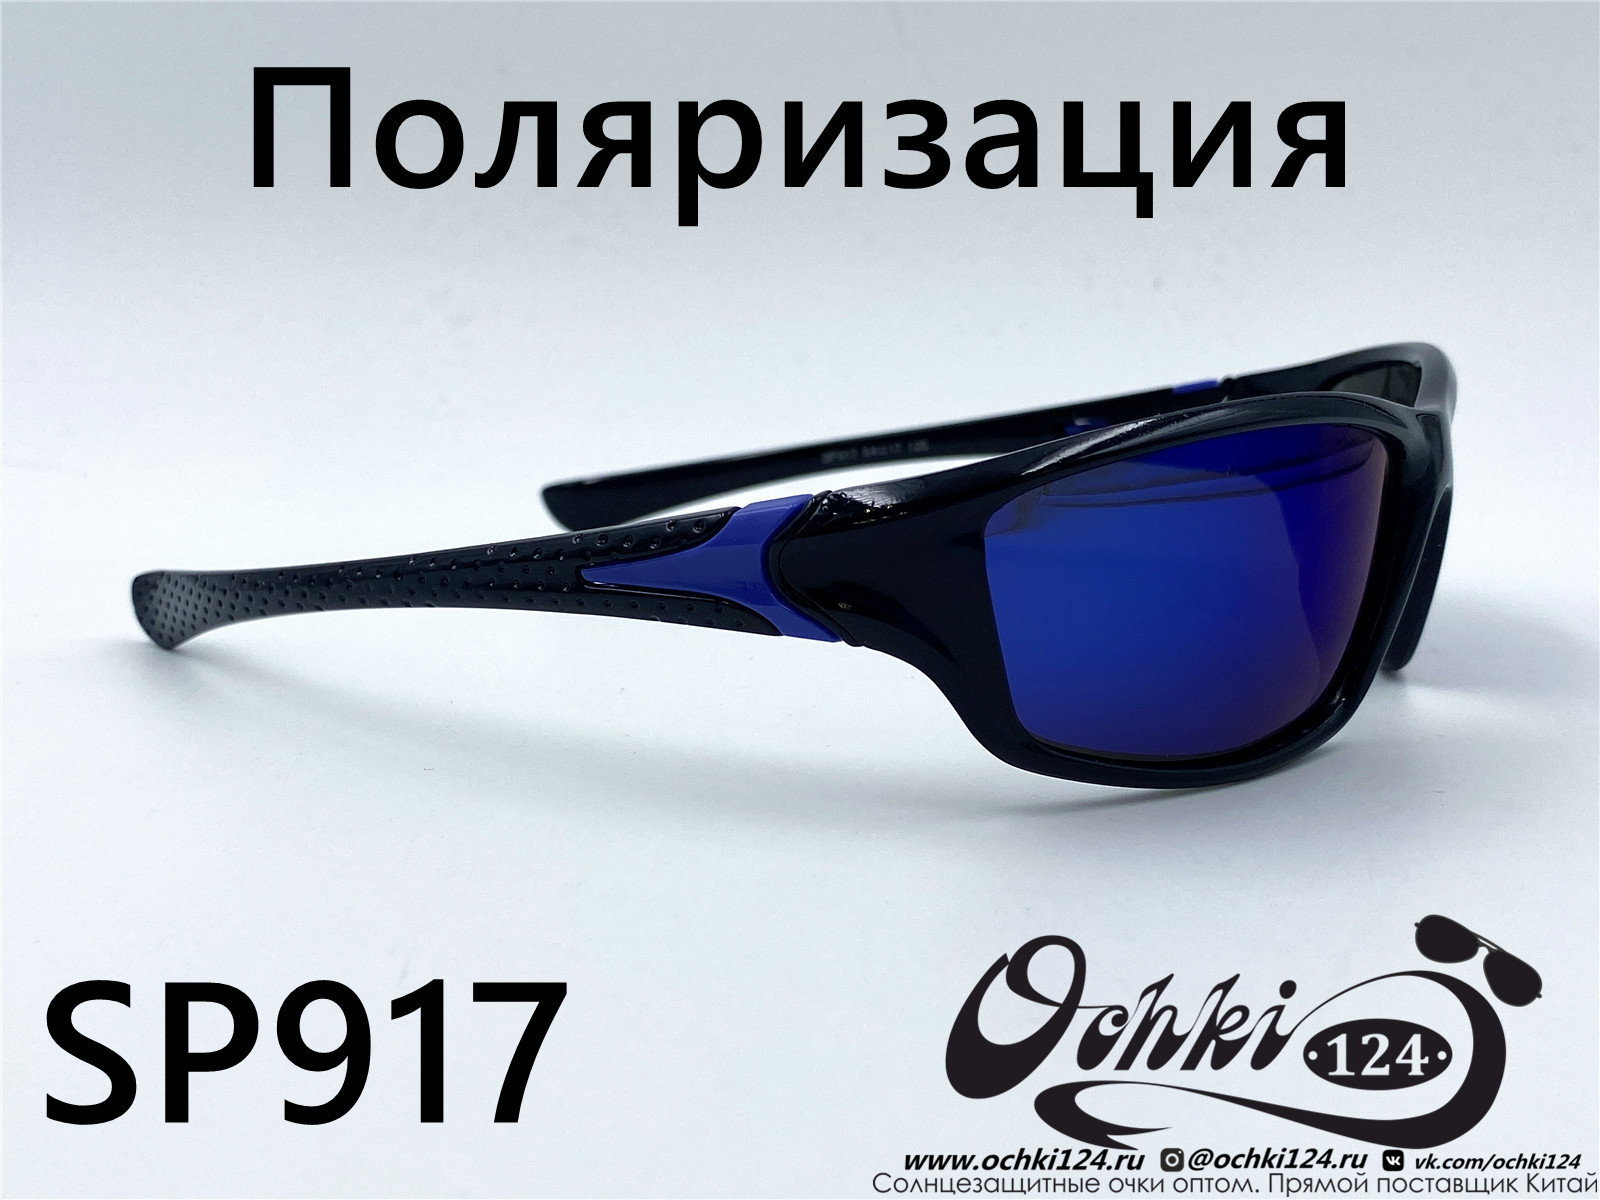  Солнцезащитные очки картинка 2022 Мужские Поляризованные Спорт Materice SP917-8 